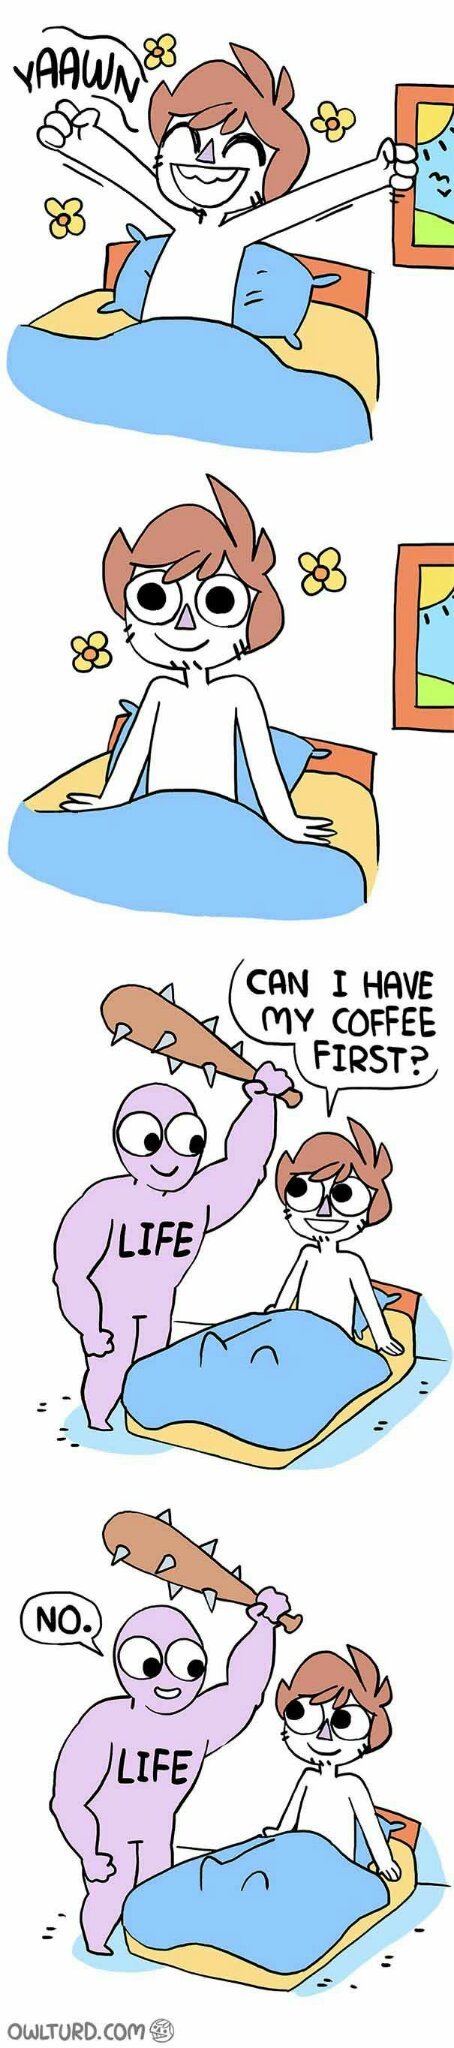 Coffee, please - meme